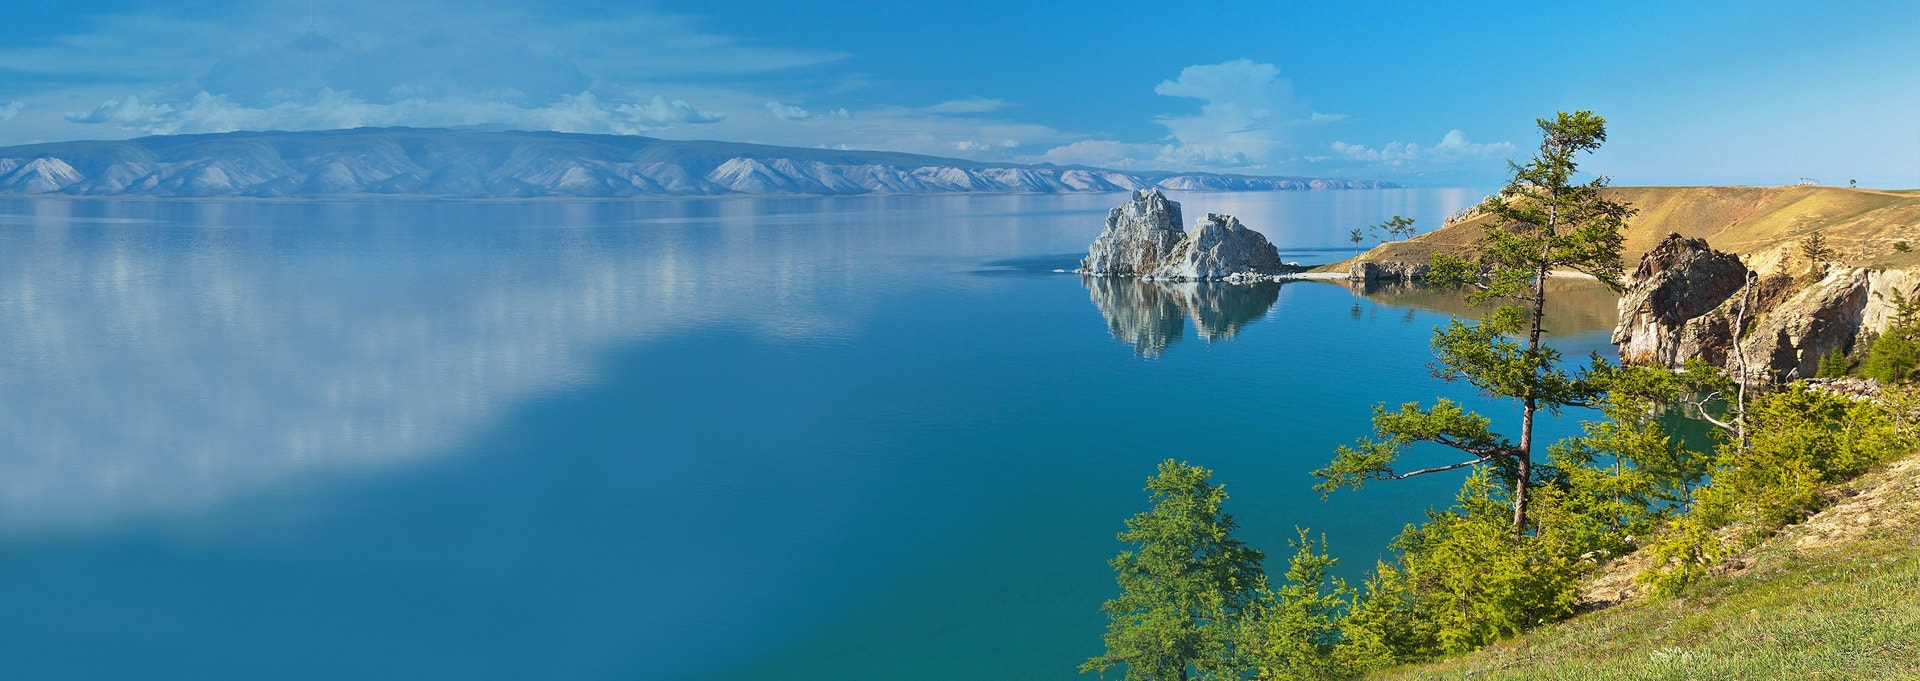 Озеро байайкал панорама